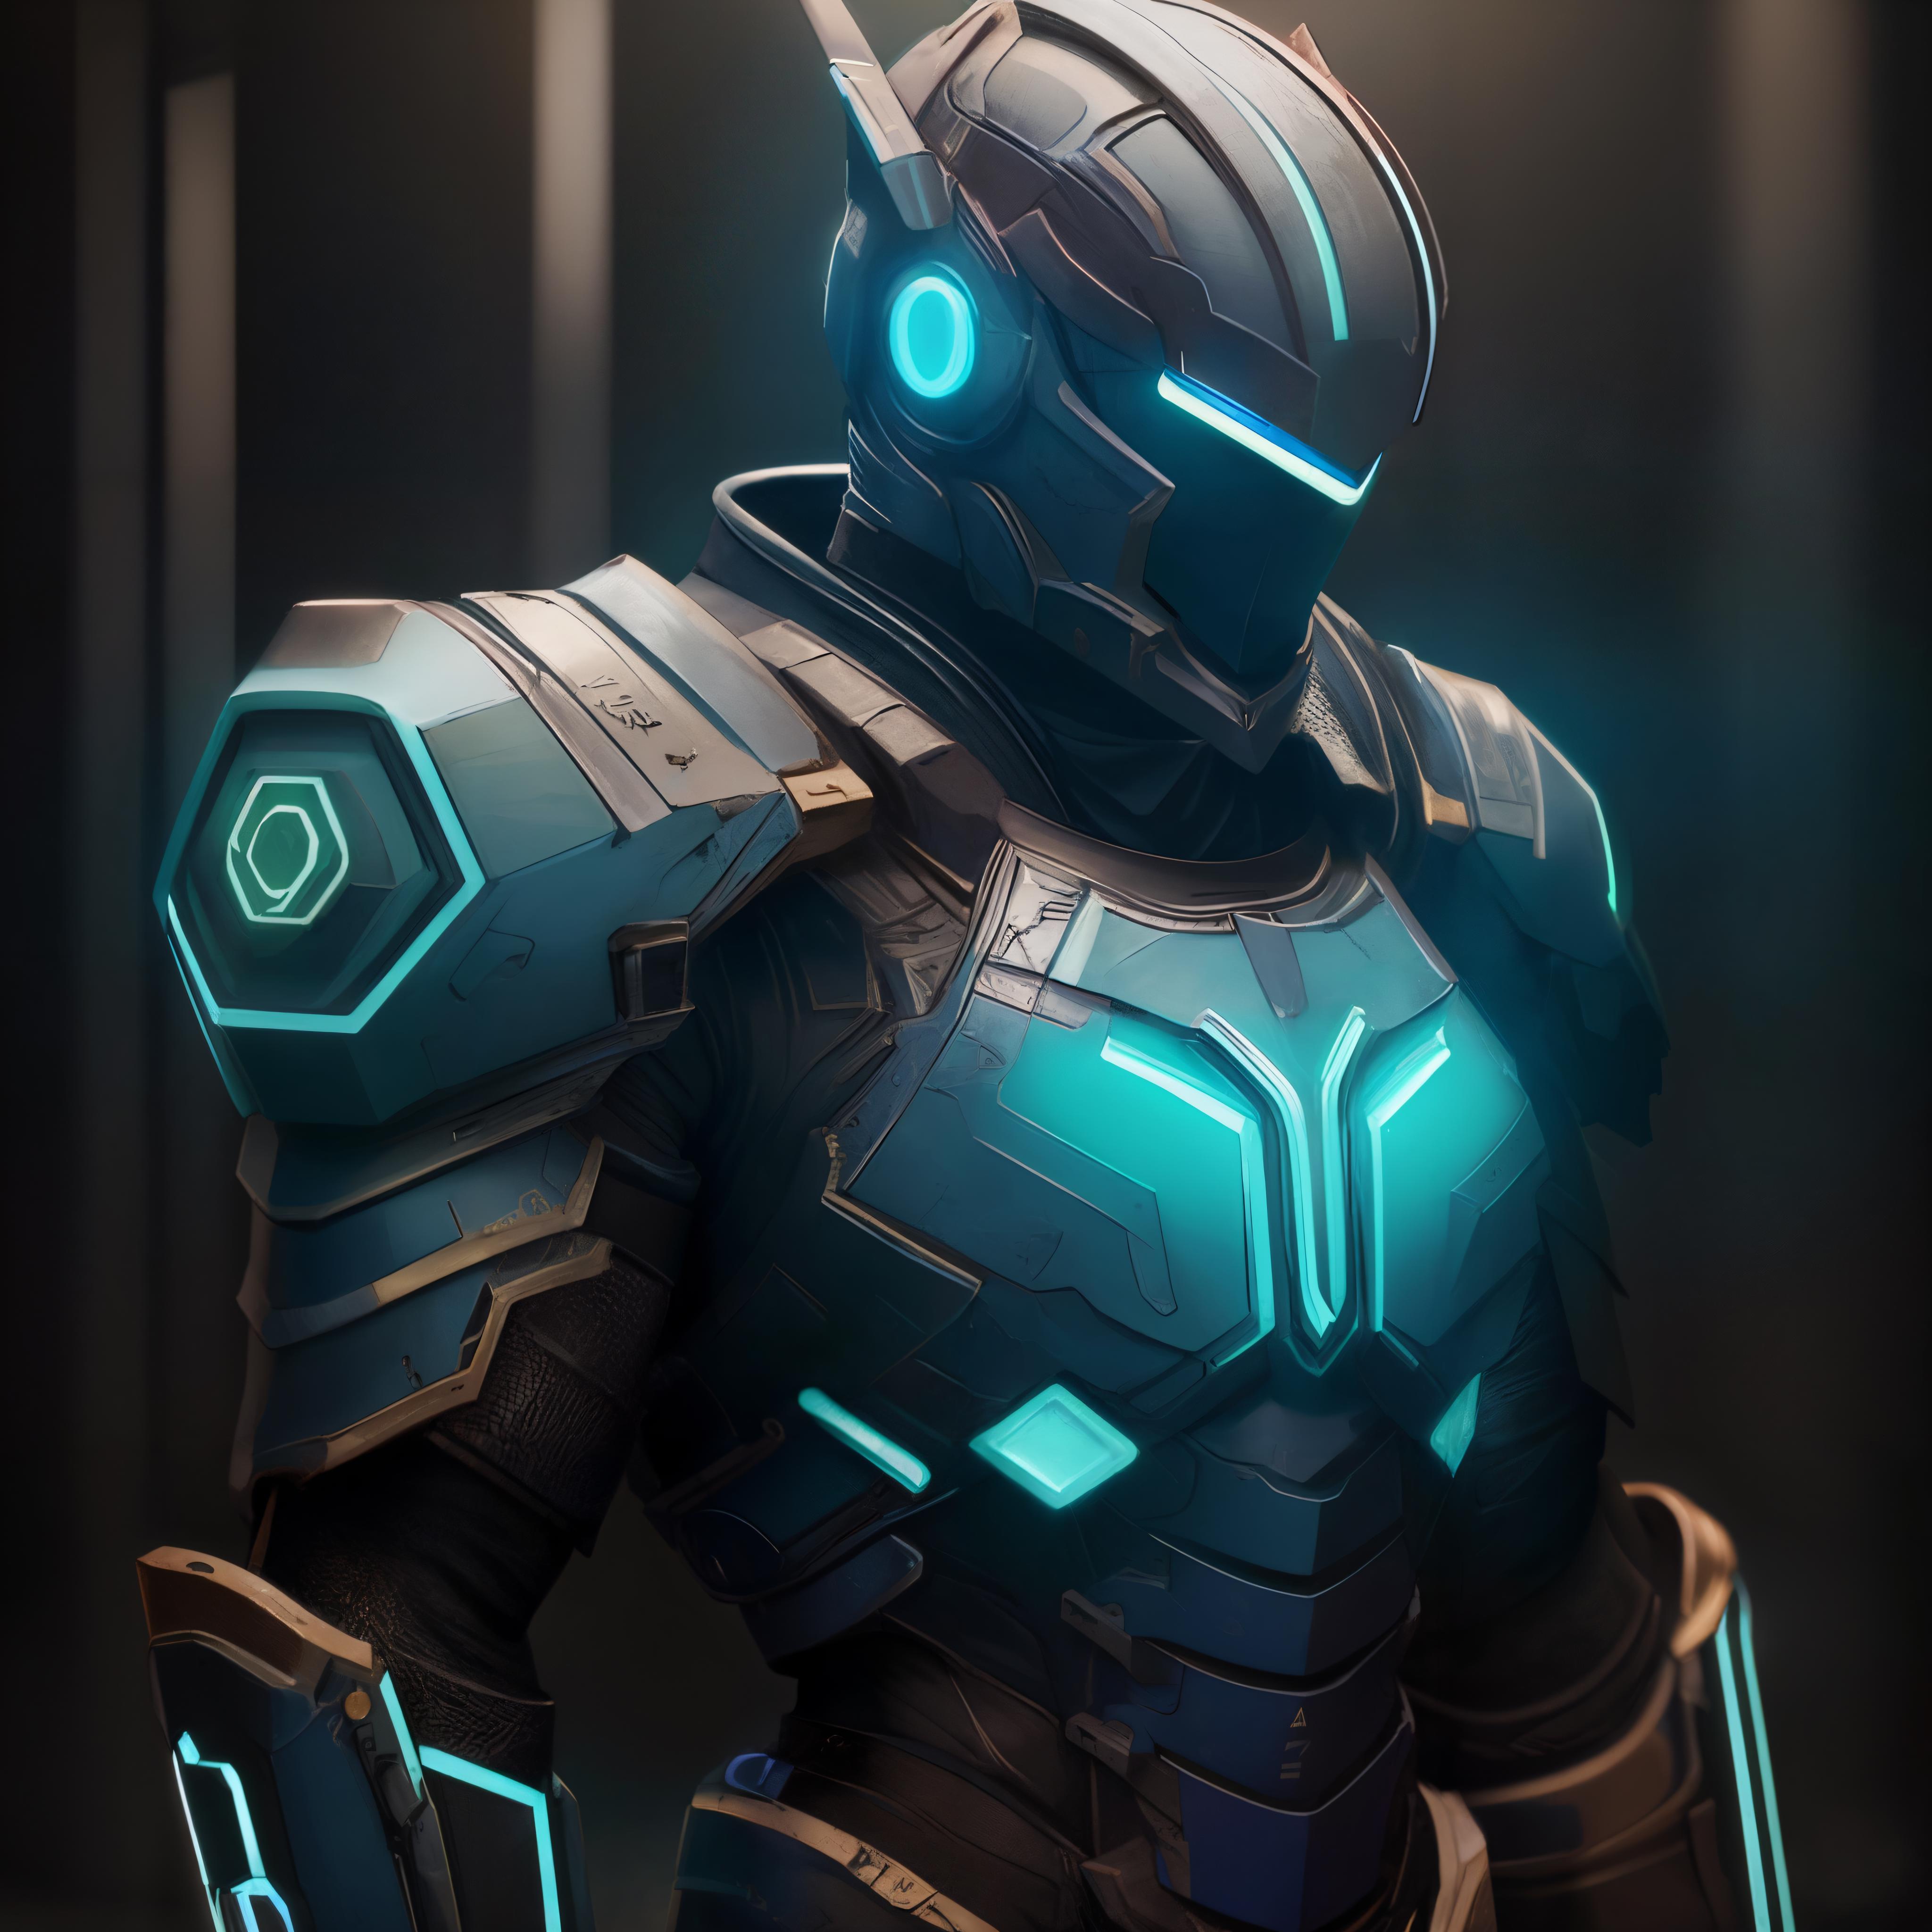 Armor Suit(盔甲套装) LoRa image by josephglaryston